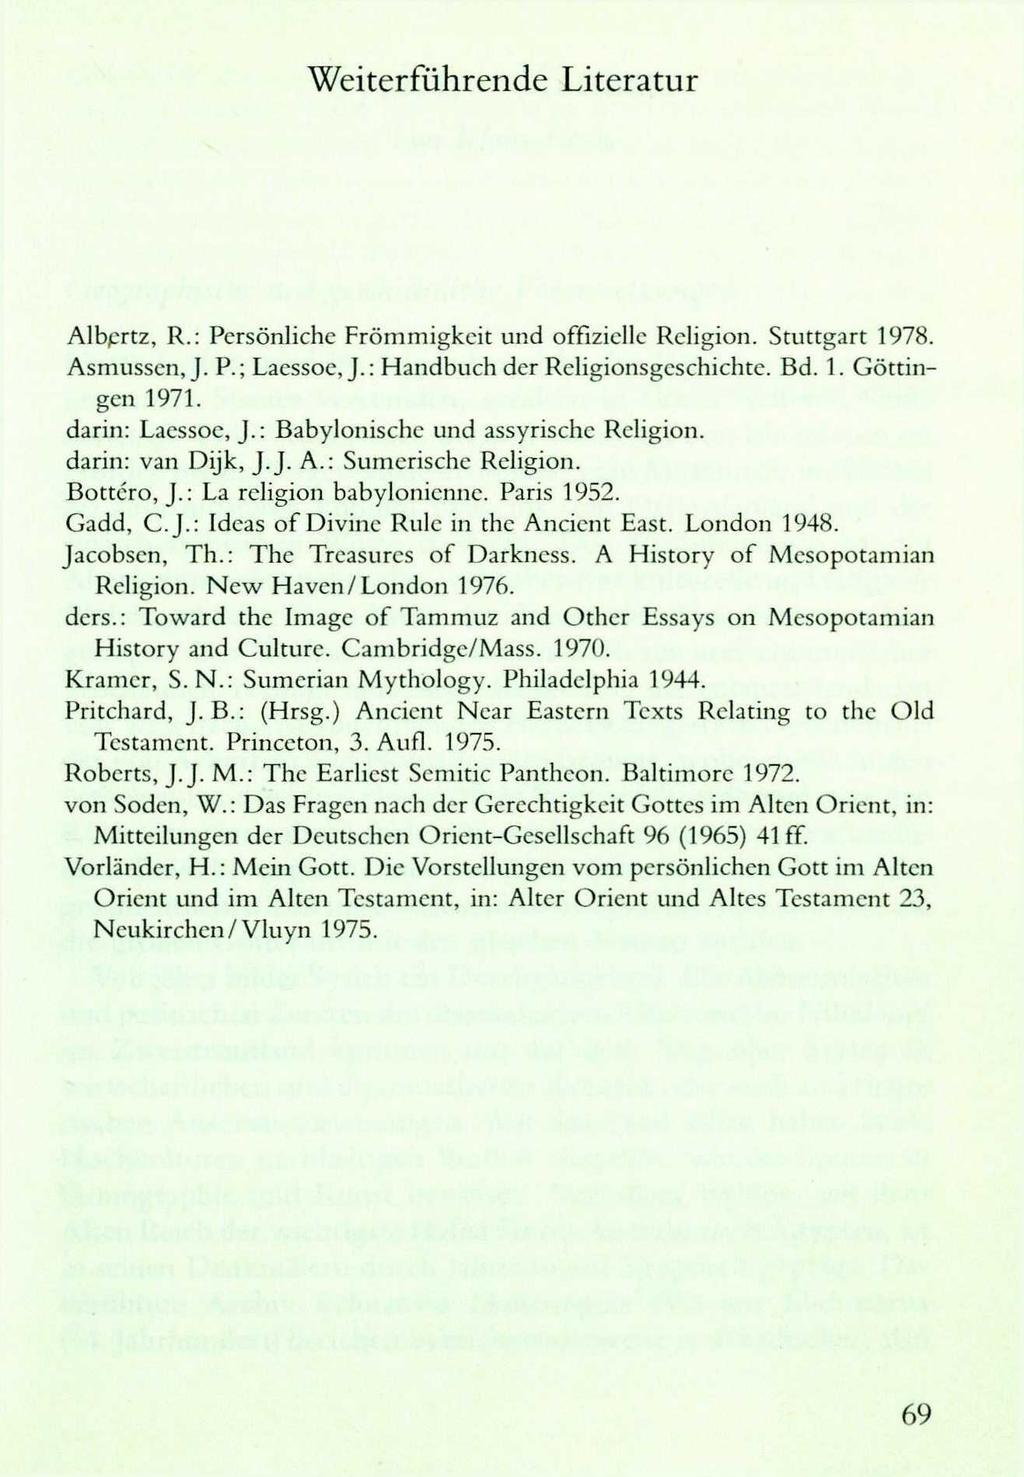 Weiterführende Literatur Albertz, R.: Persönliche Frömmigkeit und offizielle Religion. Stuttgart 1978. Asmusscn, J. P.; Lacssoe, J.: Handbuch der Religionsgcschichte. Bd. 1. Göttingen 1971.